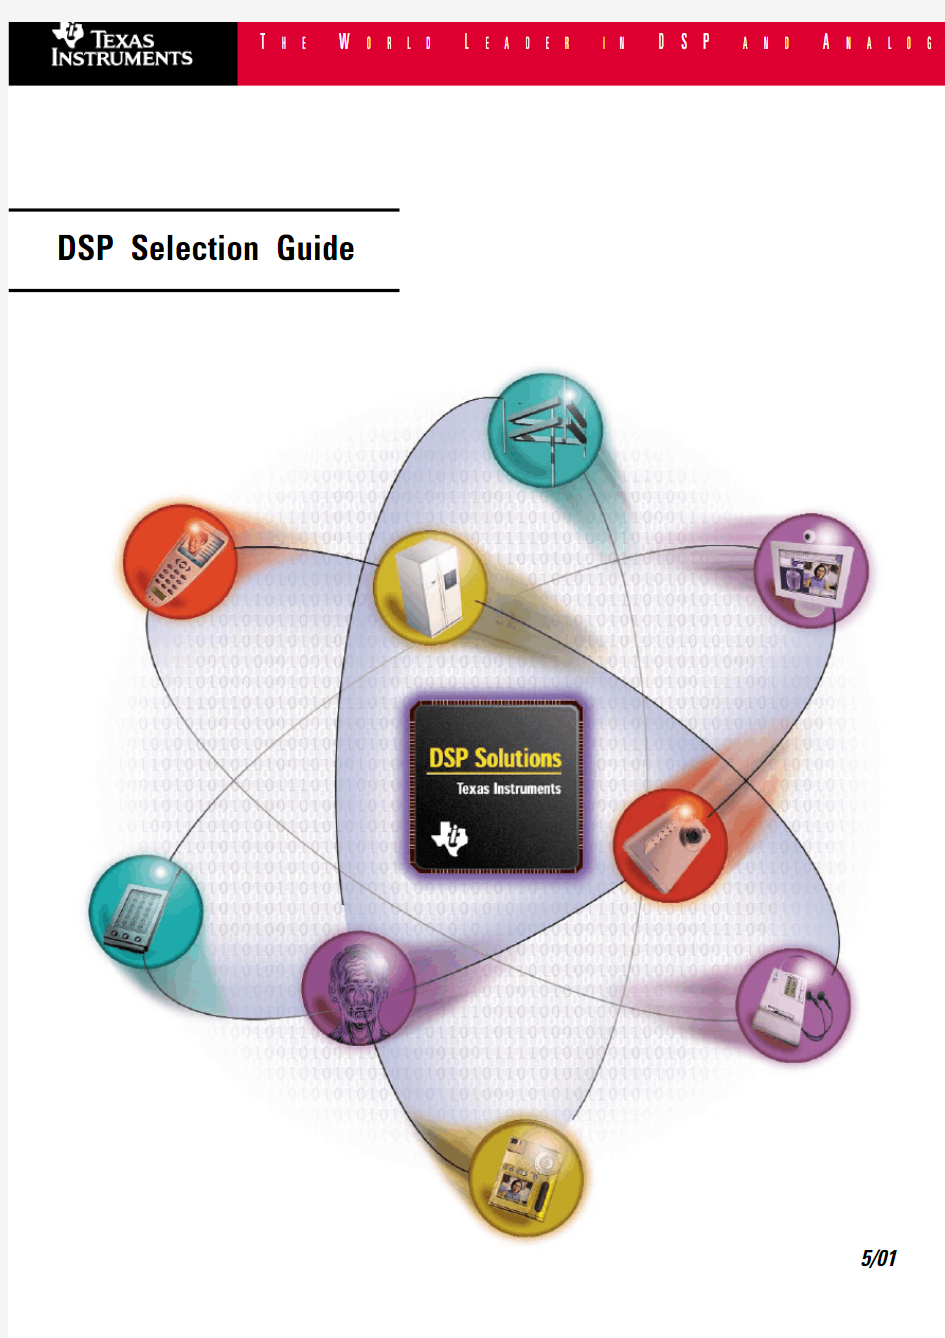 德州仪器公司(TI)最新DSP选型指南